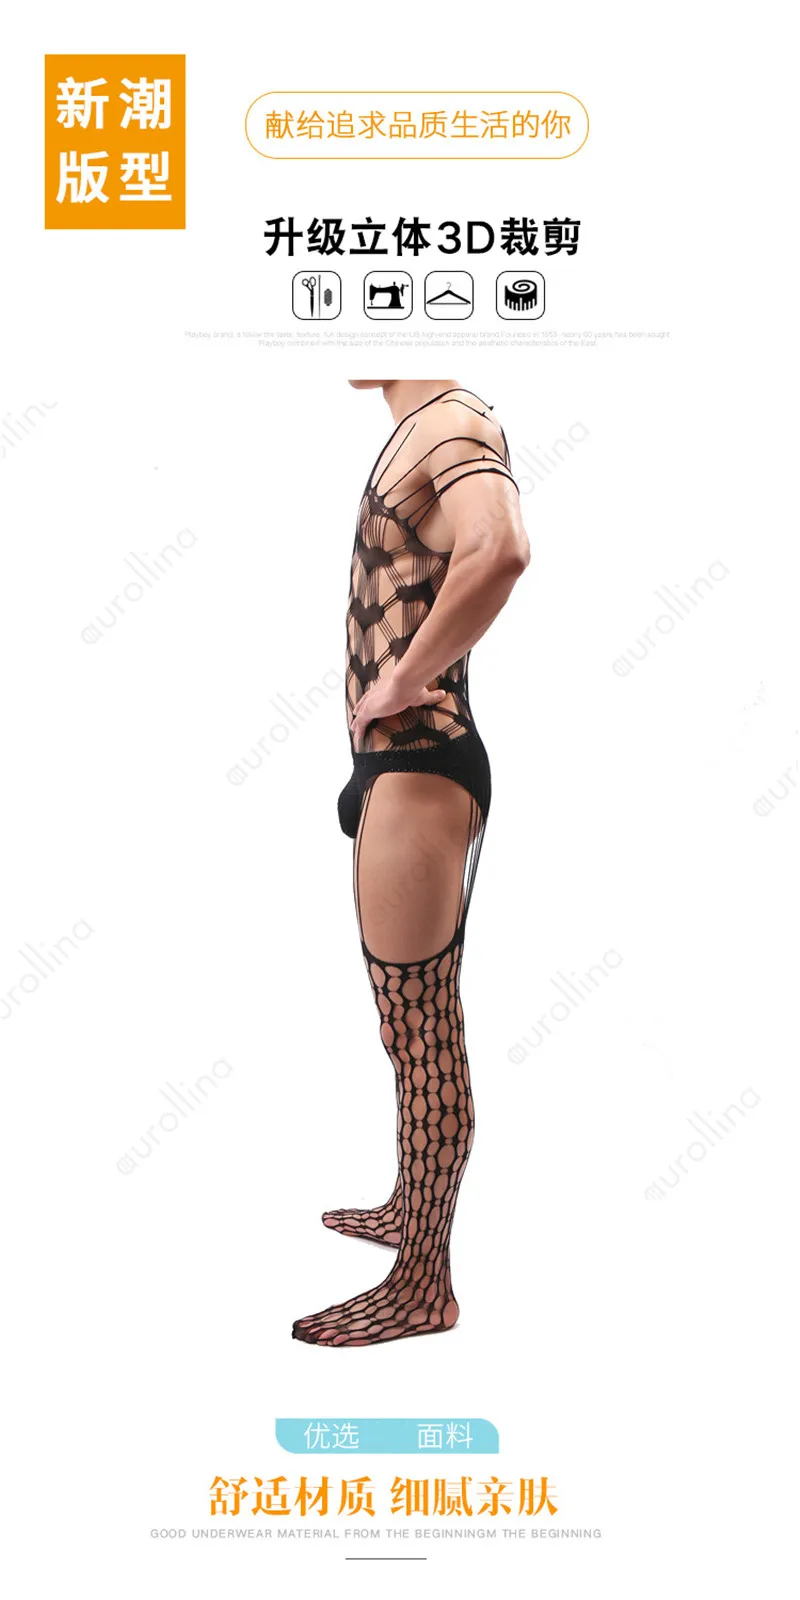 Сексуальное мужское мускулистое боди сексуальное перекрестное платье нейлоновое праздничное гормоны роговой человек переодевание наряд мужской Lingeries